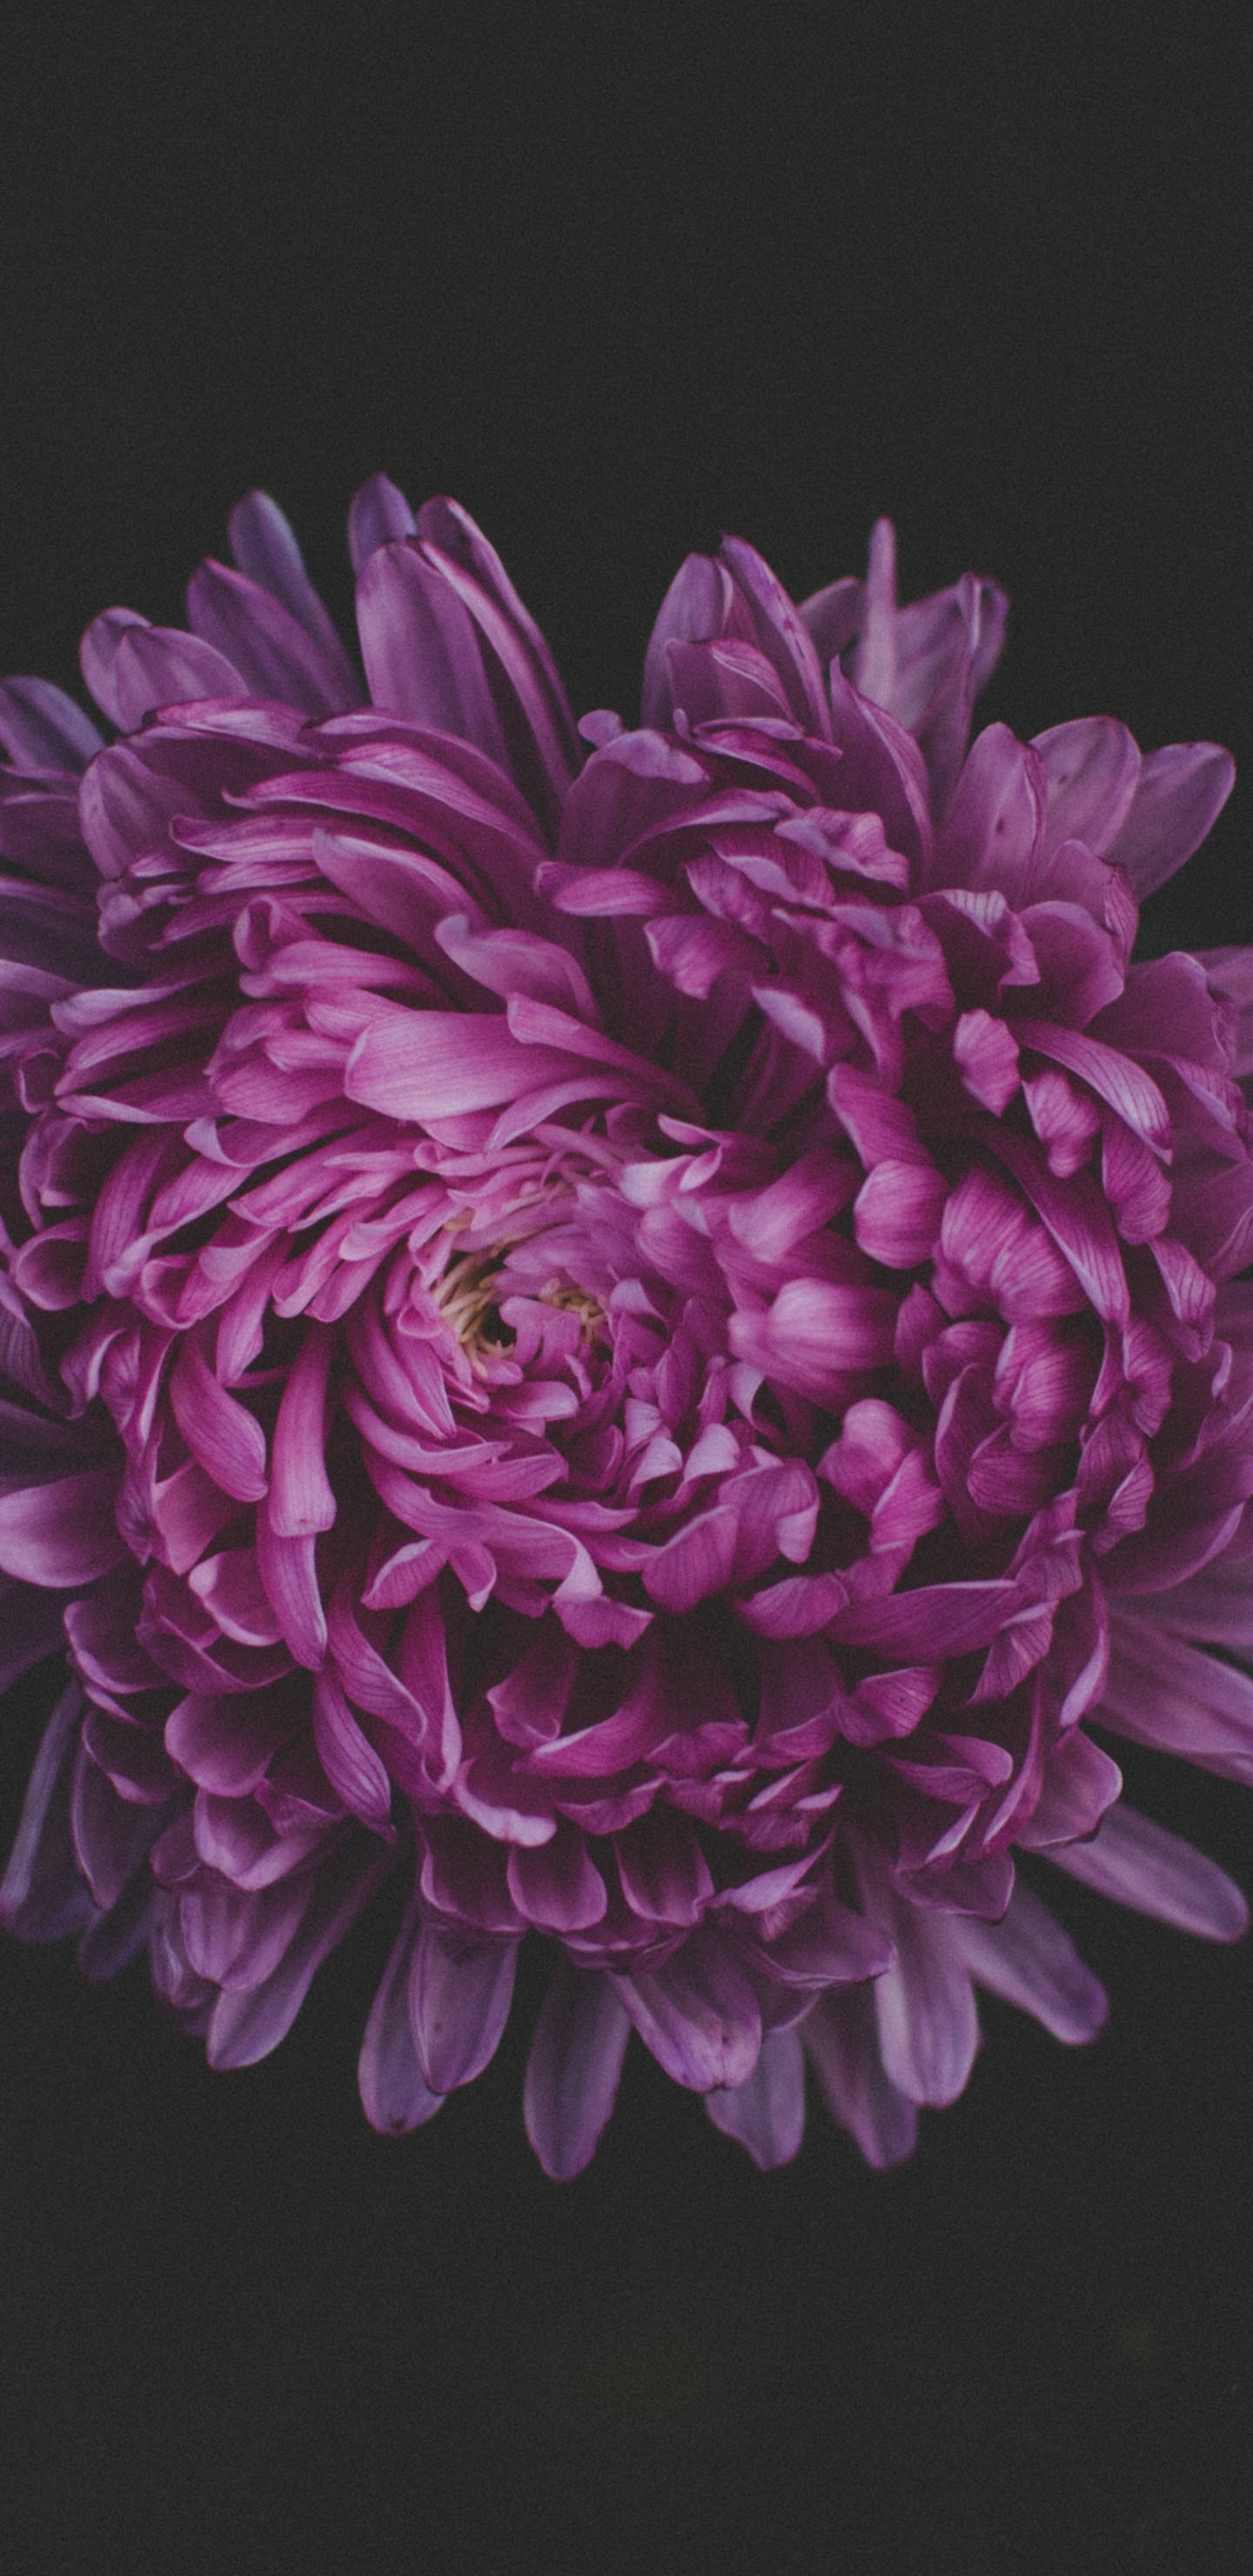 Fleur Violette Sur Fond Noir. Wallpaper in 1440x2960 Resolution